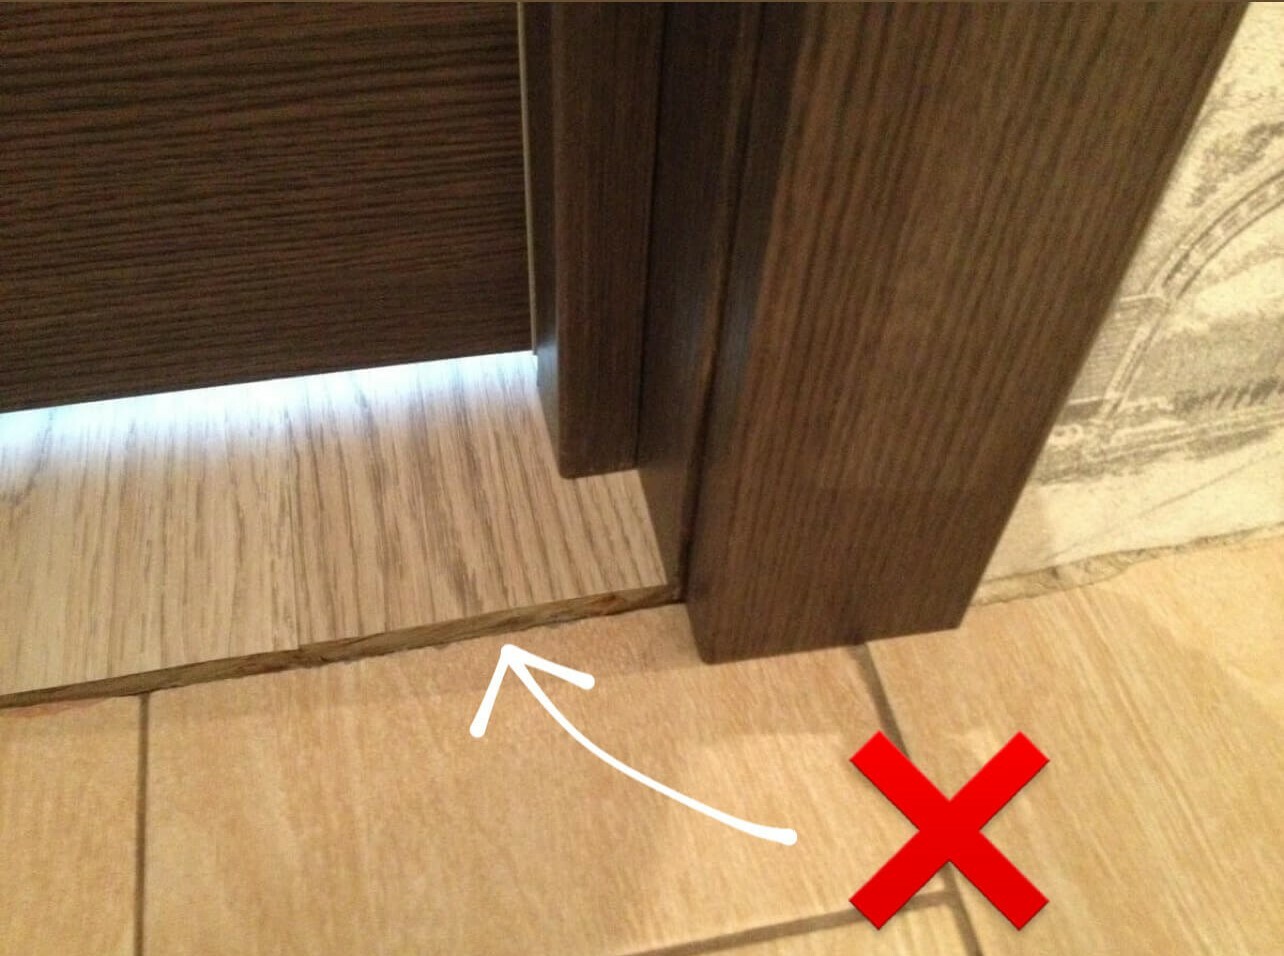 Неправильный стык напольных покрытий под дверью.